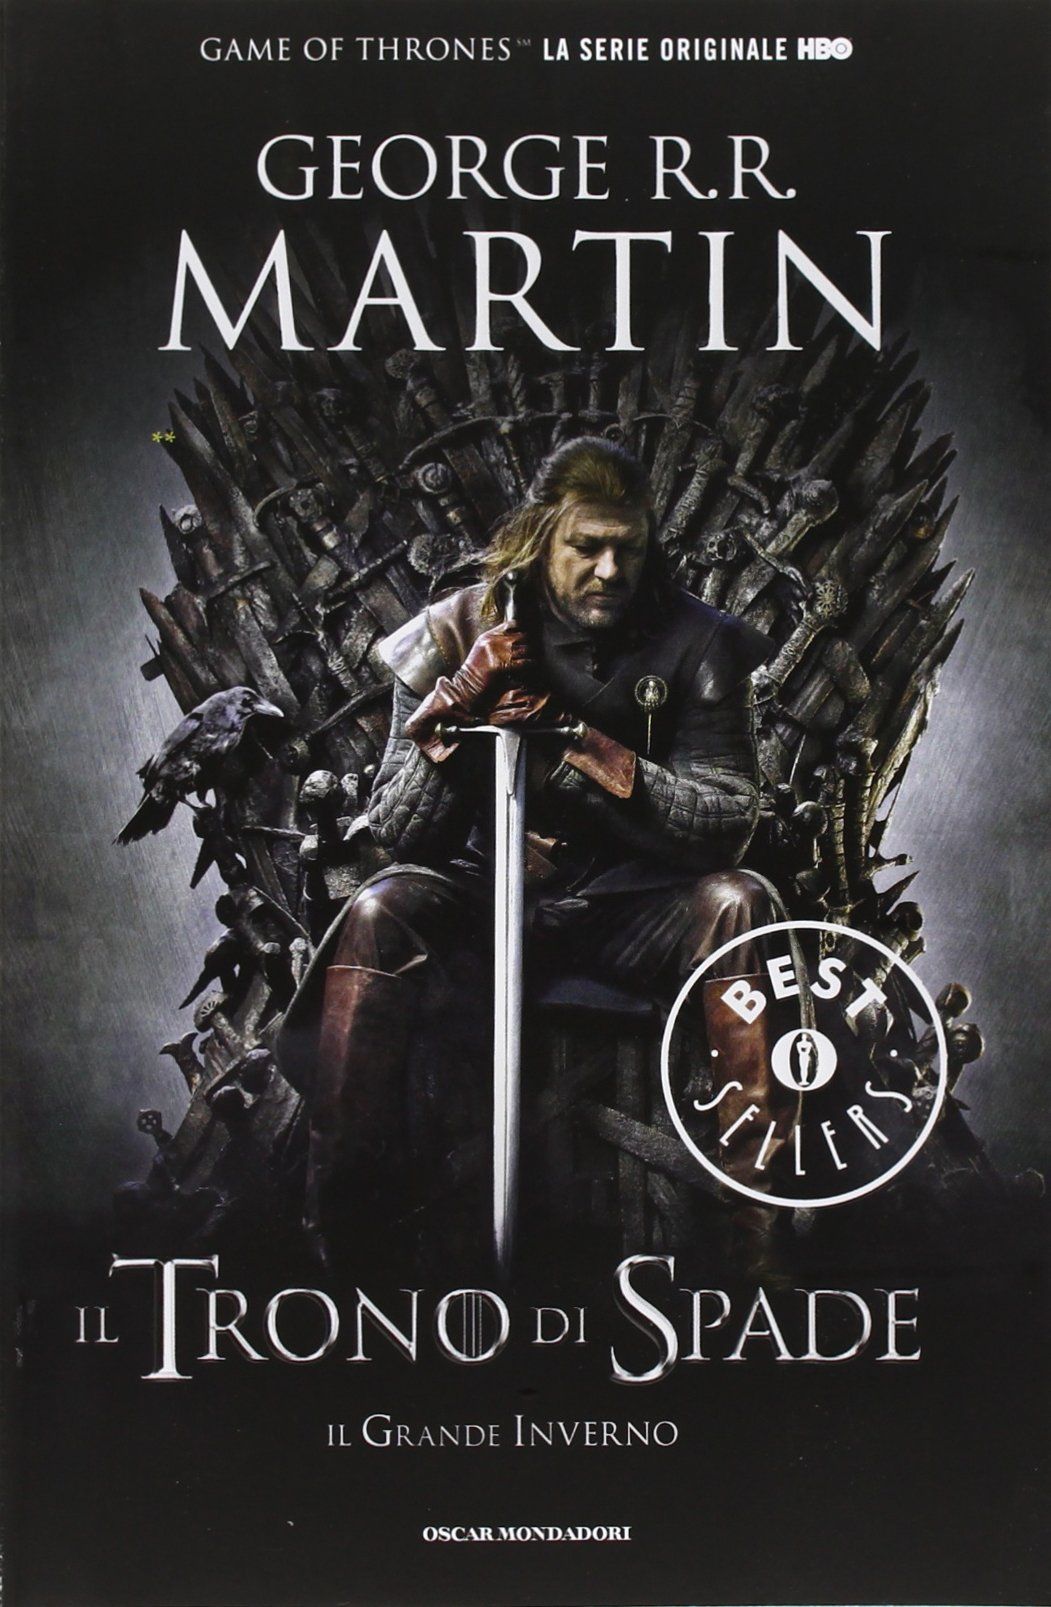 Trono di Spade: tutti i libri e la collezione completa della saga